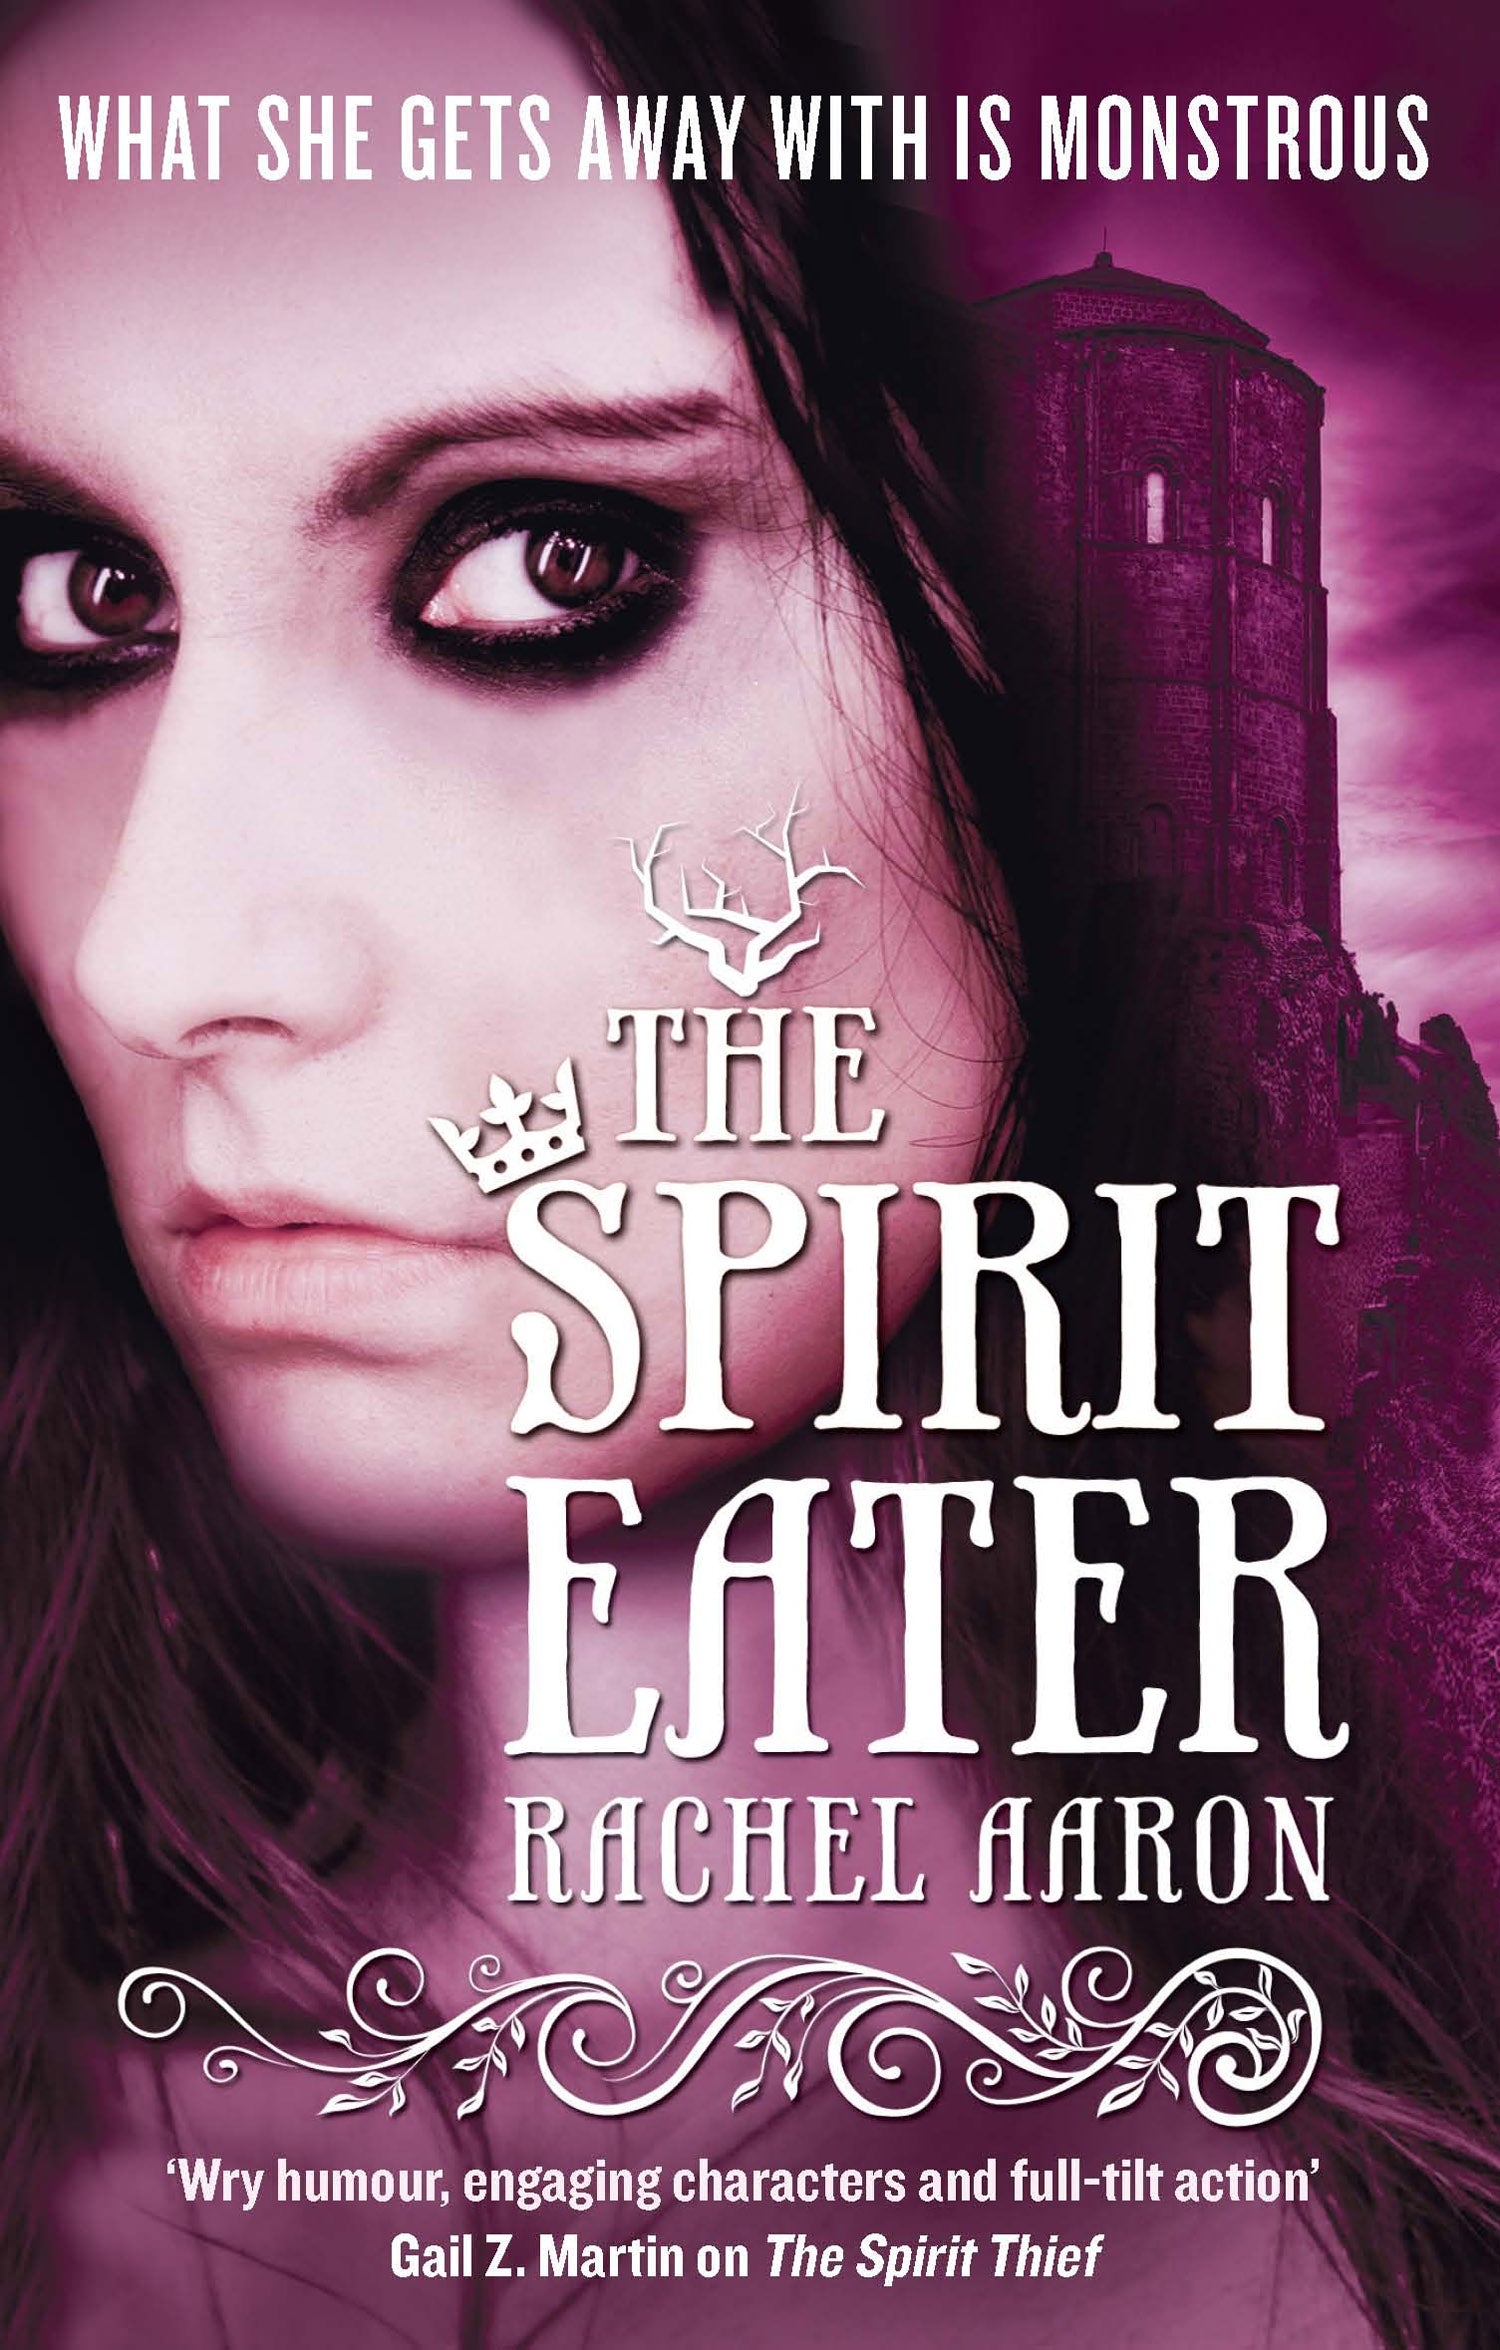 The Spirit Eater by Rachel Aaron